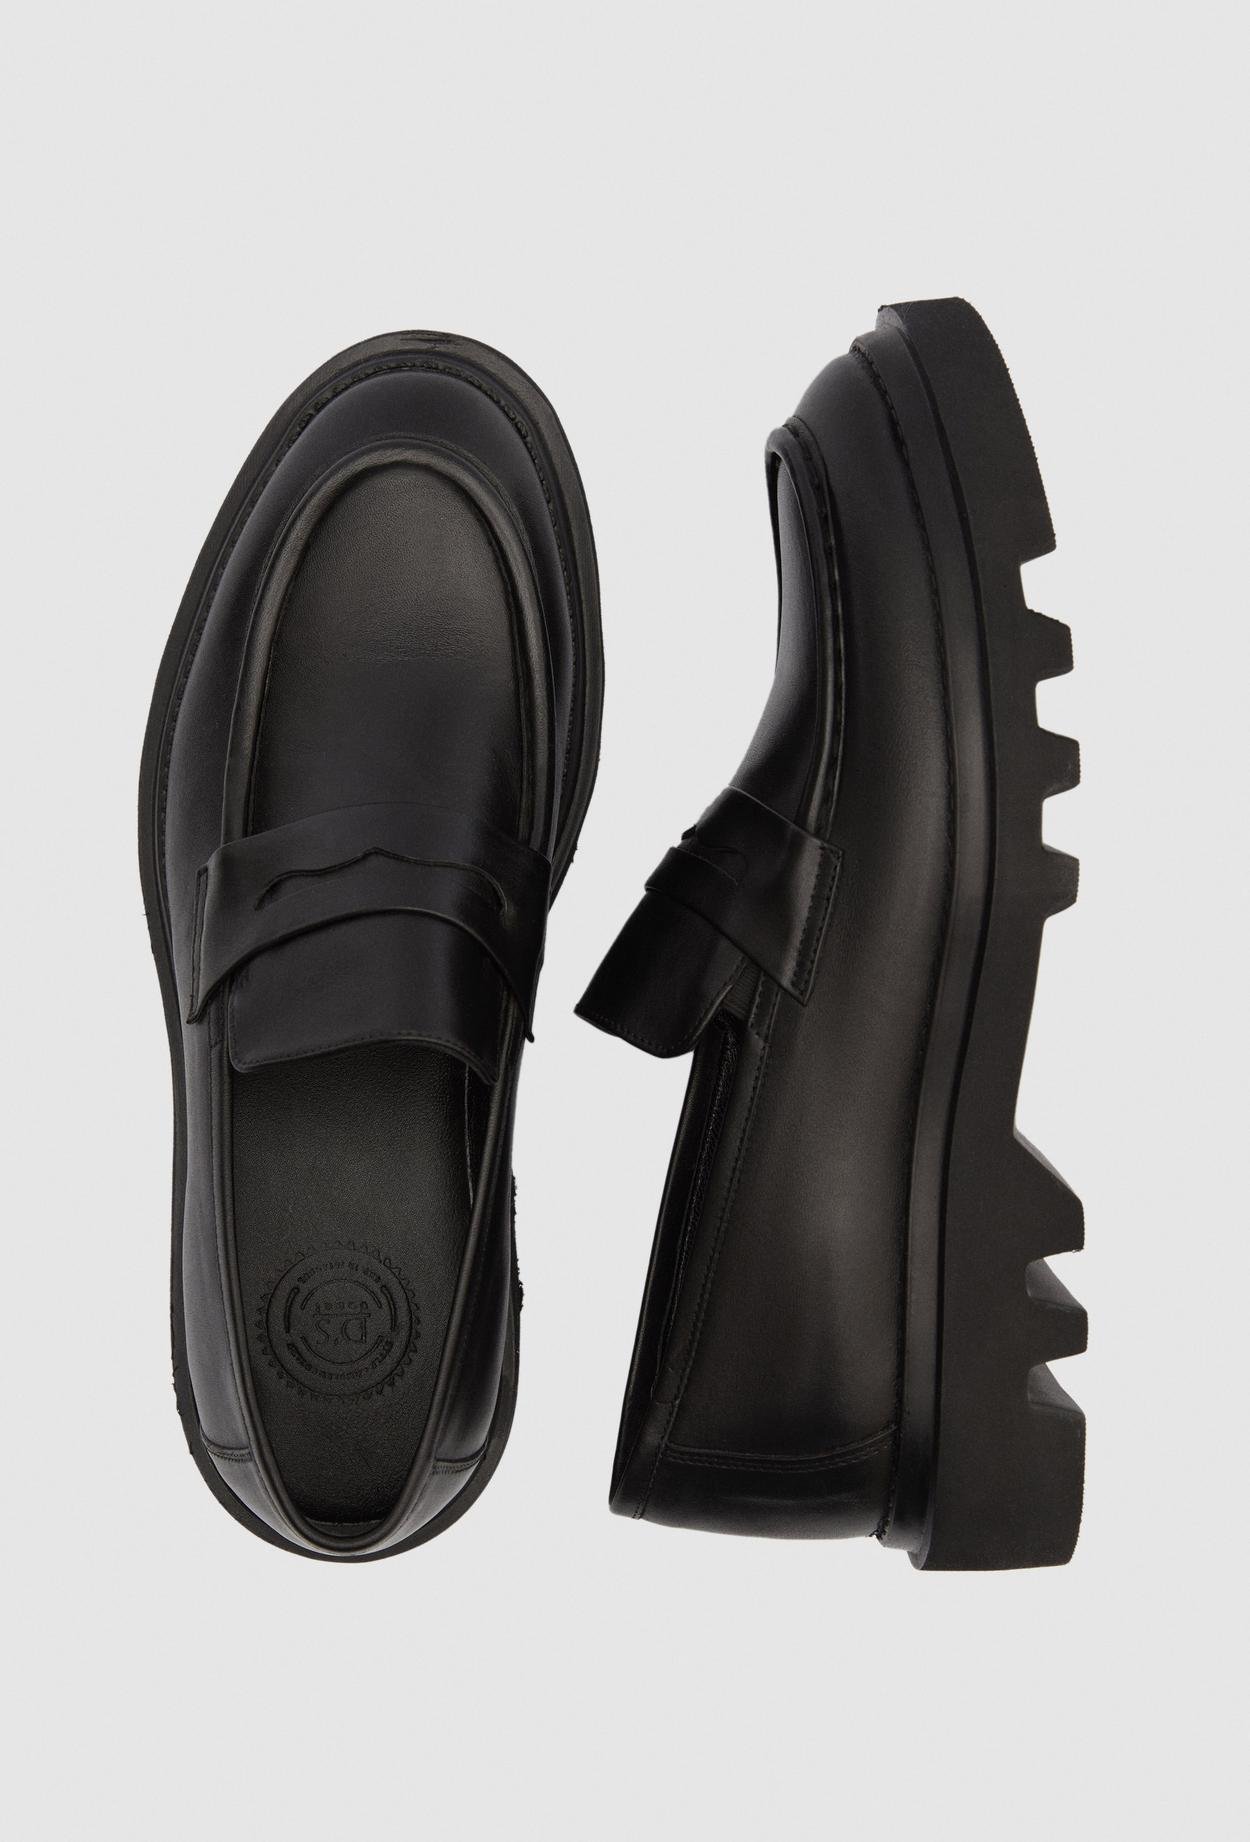 Ds Damat Siyah Bant Detaylı Deri Loafer Ayakkabi